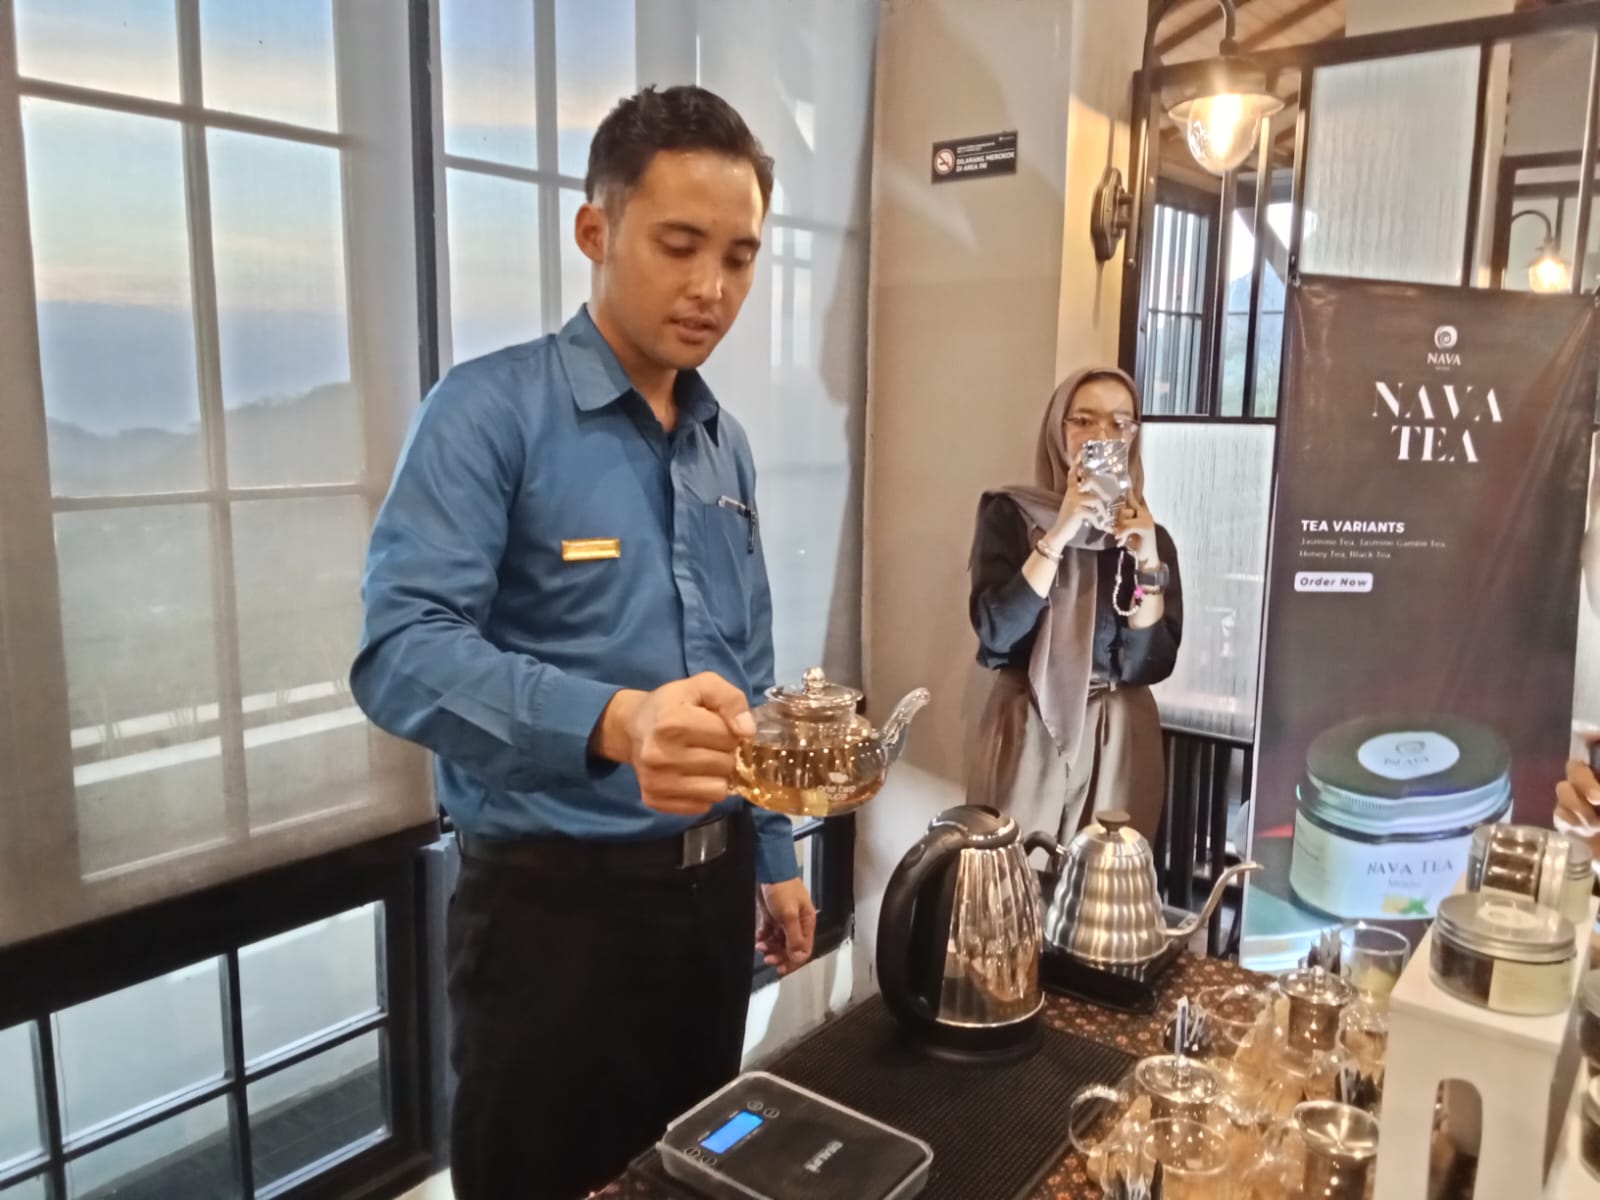 Nava Hotel Tawangmangu Hadirkan Nava Tea Sensasi Teh Istimewa dari Daun Teh Pilihan di Kaki Gunung Lawu